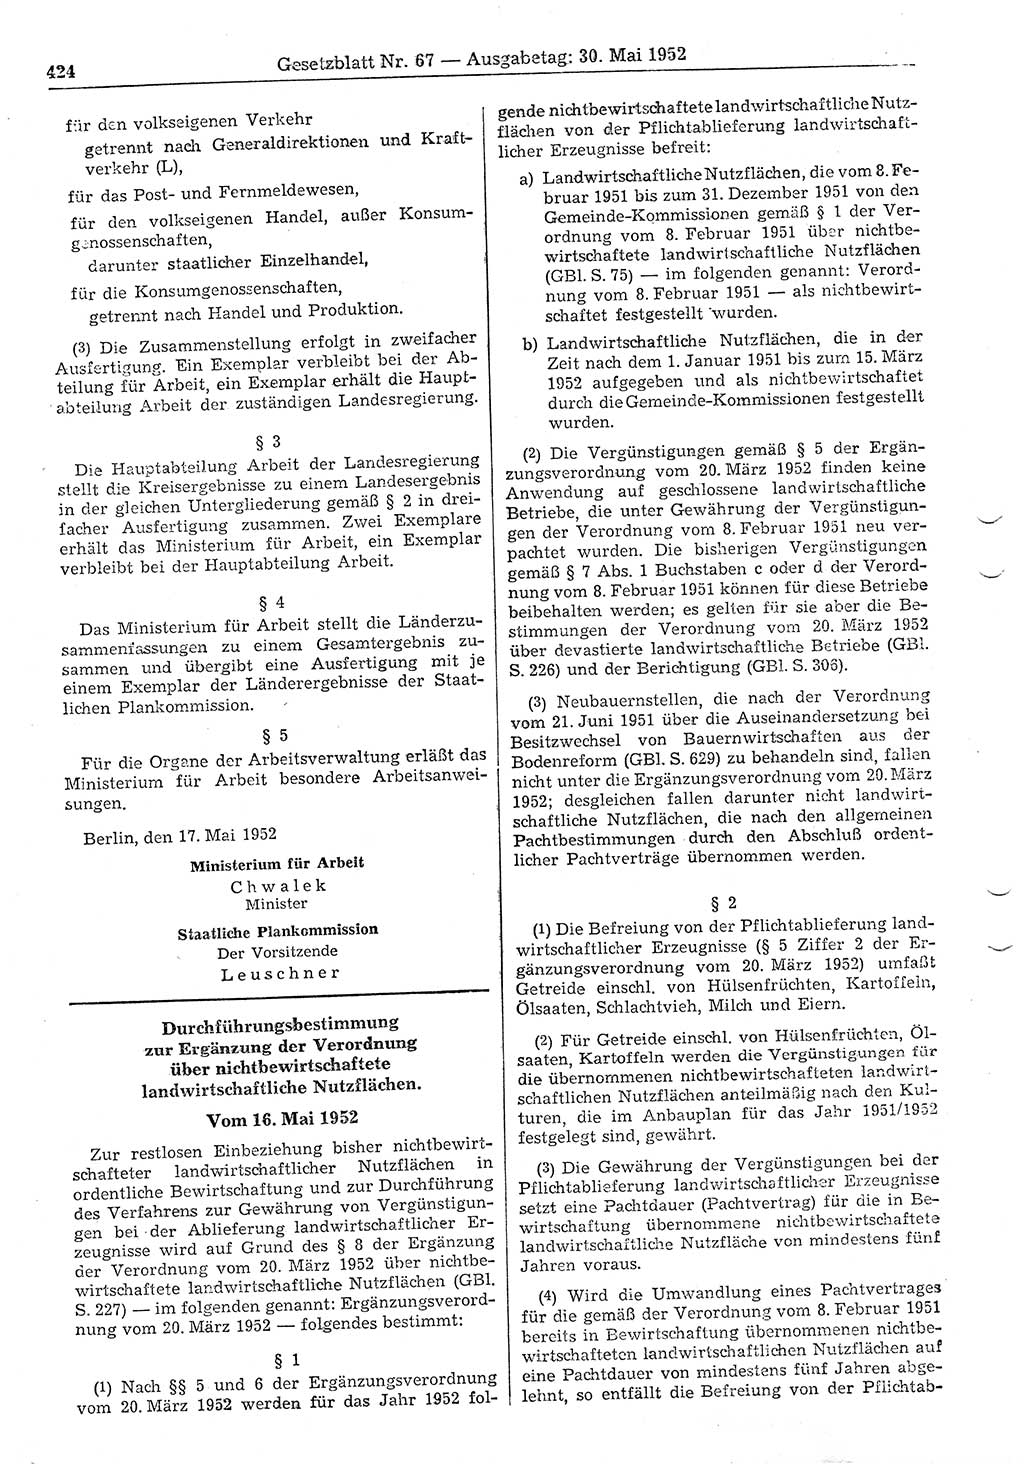 Gesetzblatt (GBl.) der Deutschen Demokratischen Republik (DDR) 1952, Seite 424 (GBl. DDR 1952, S. 424)